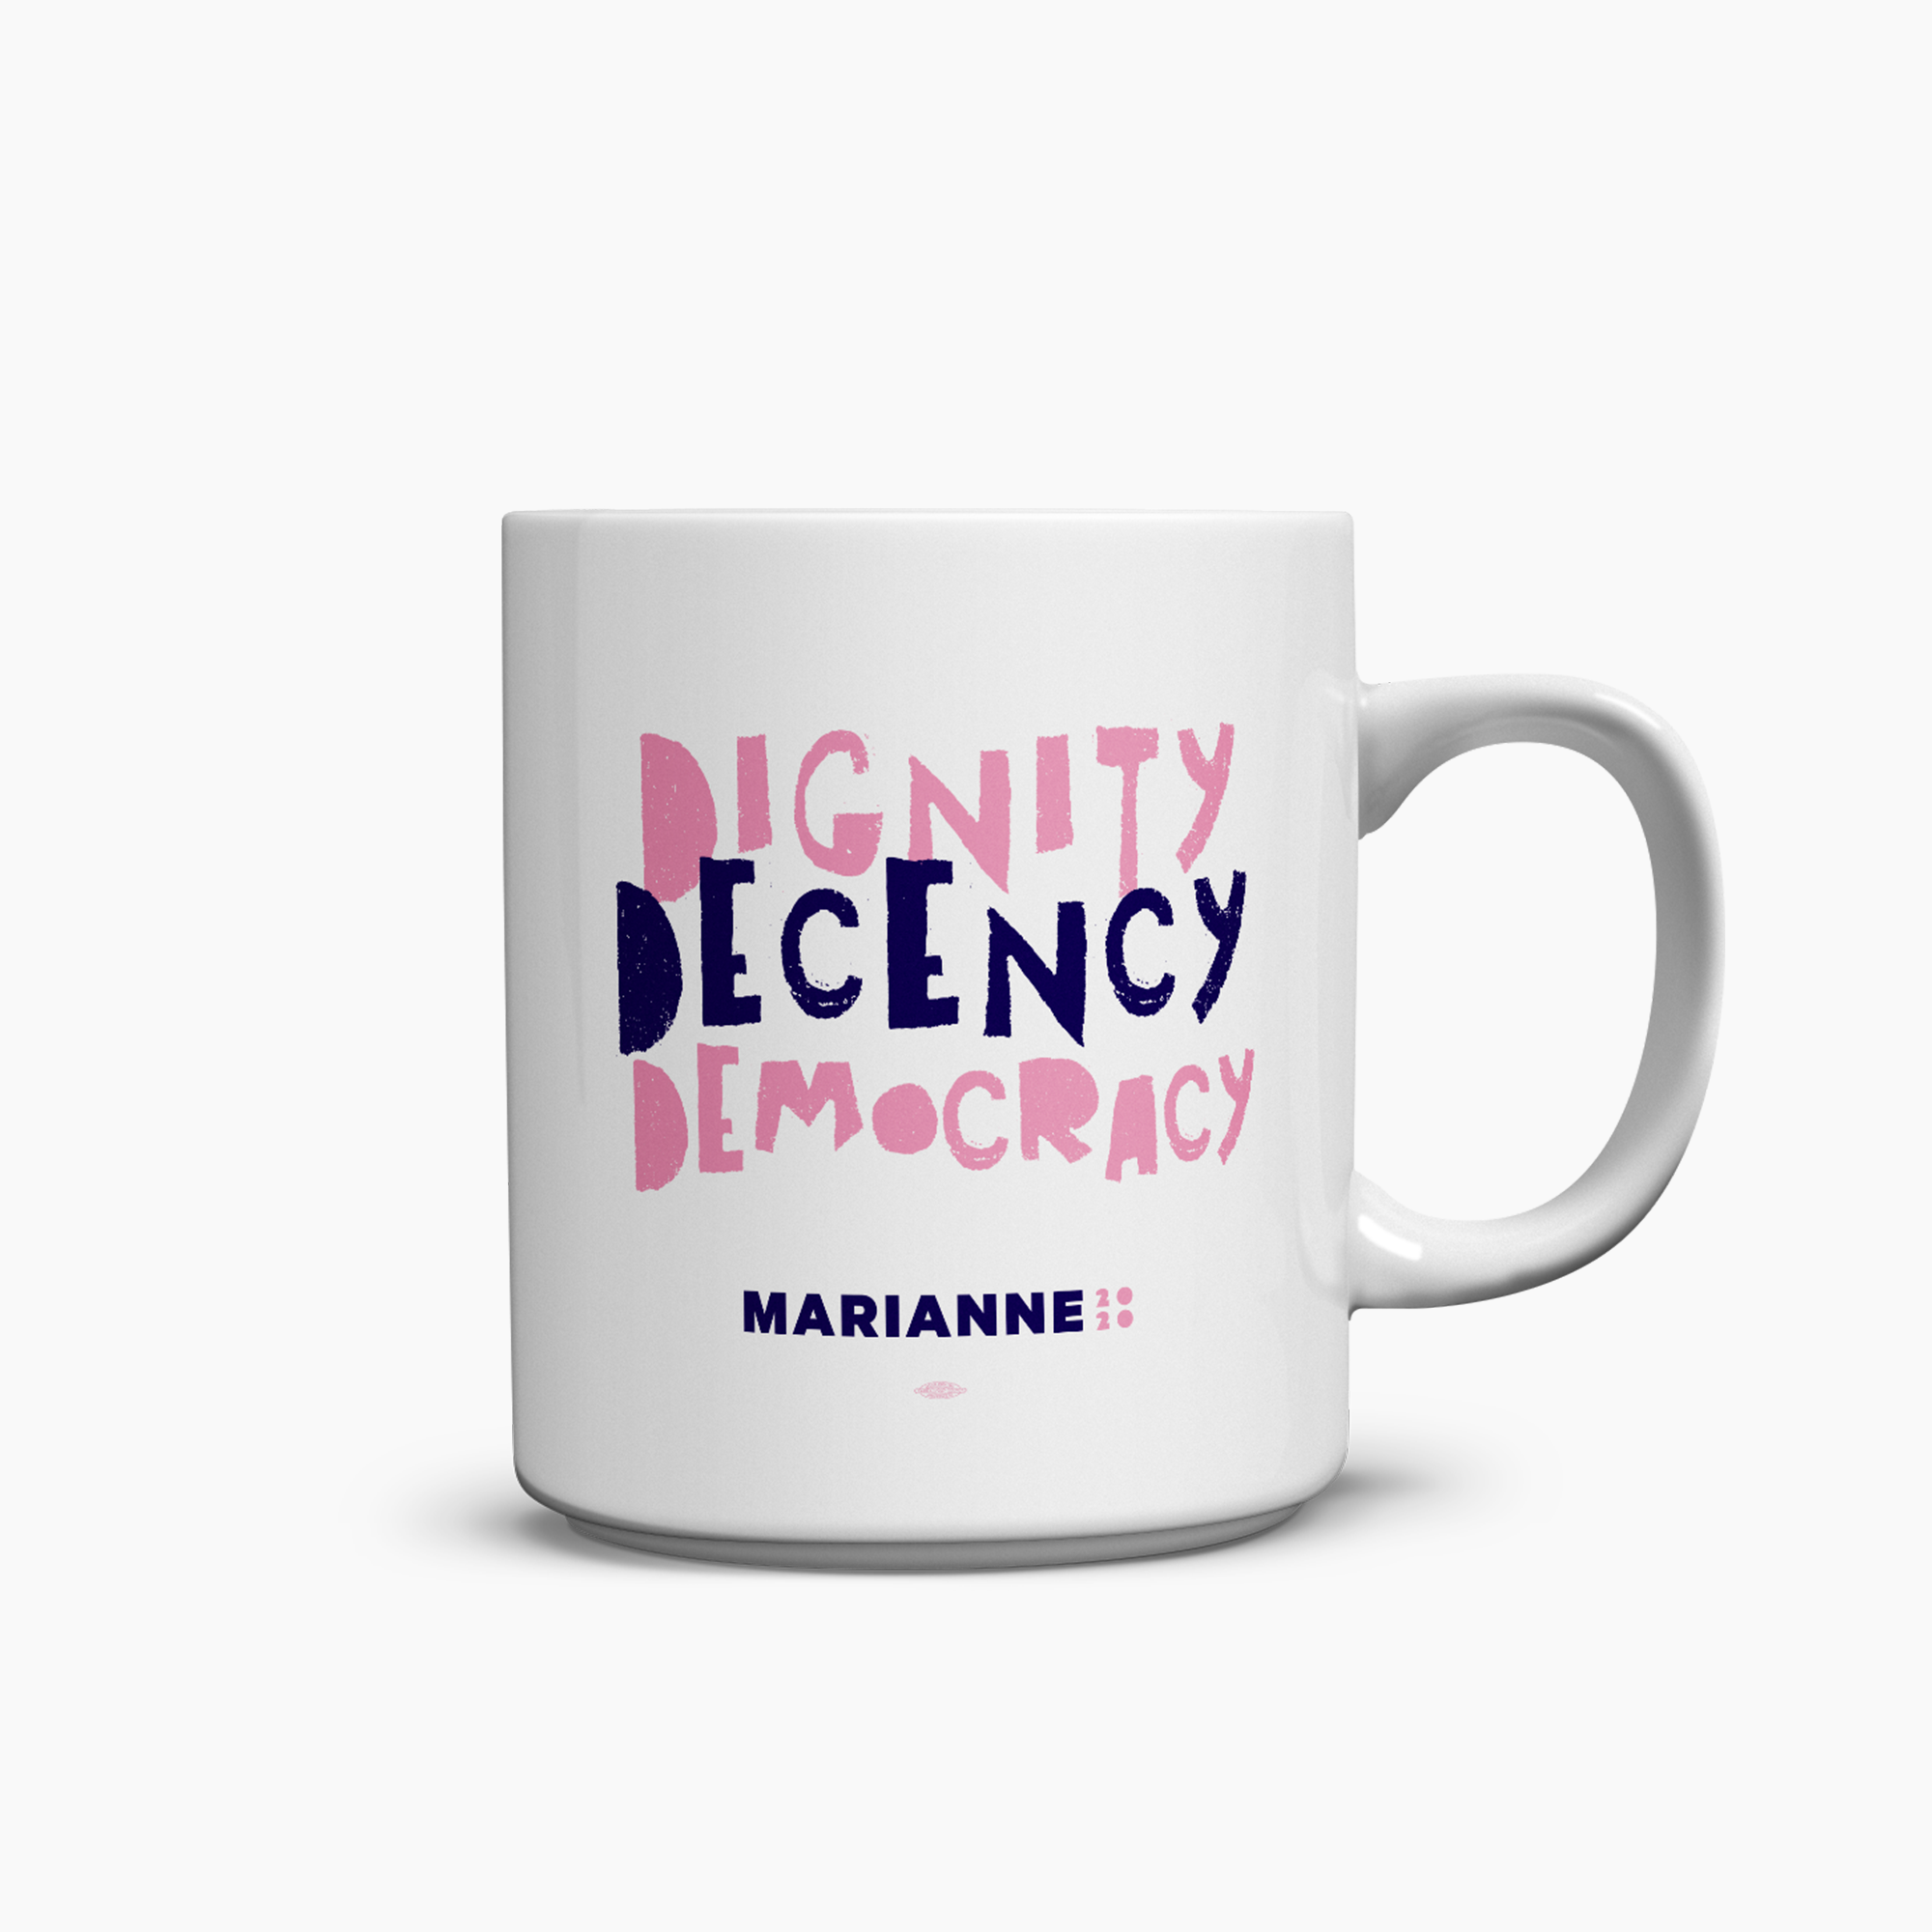 Mug: Dignity. Decency. Democracy.